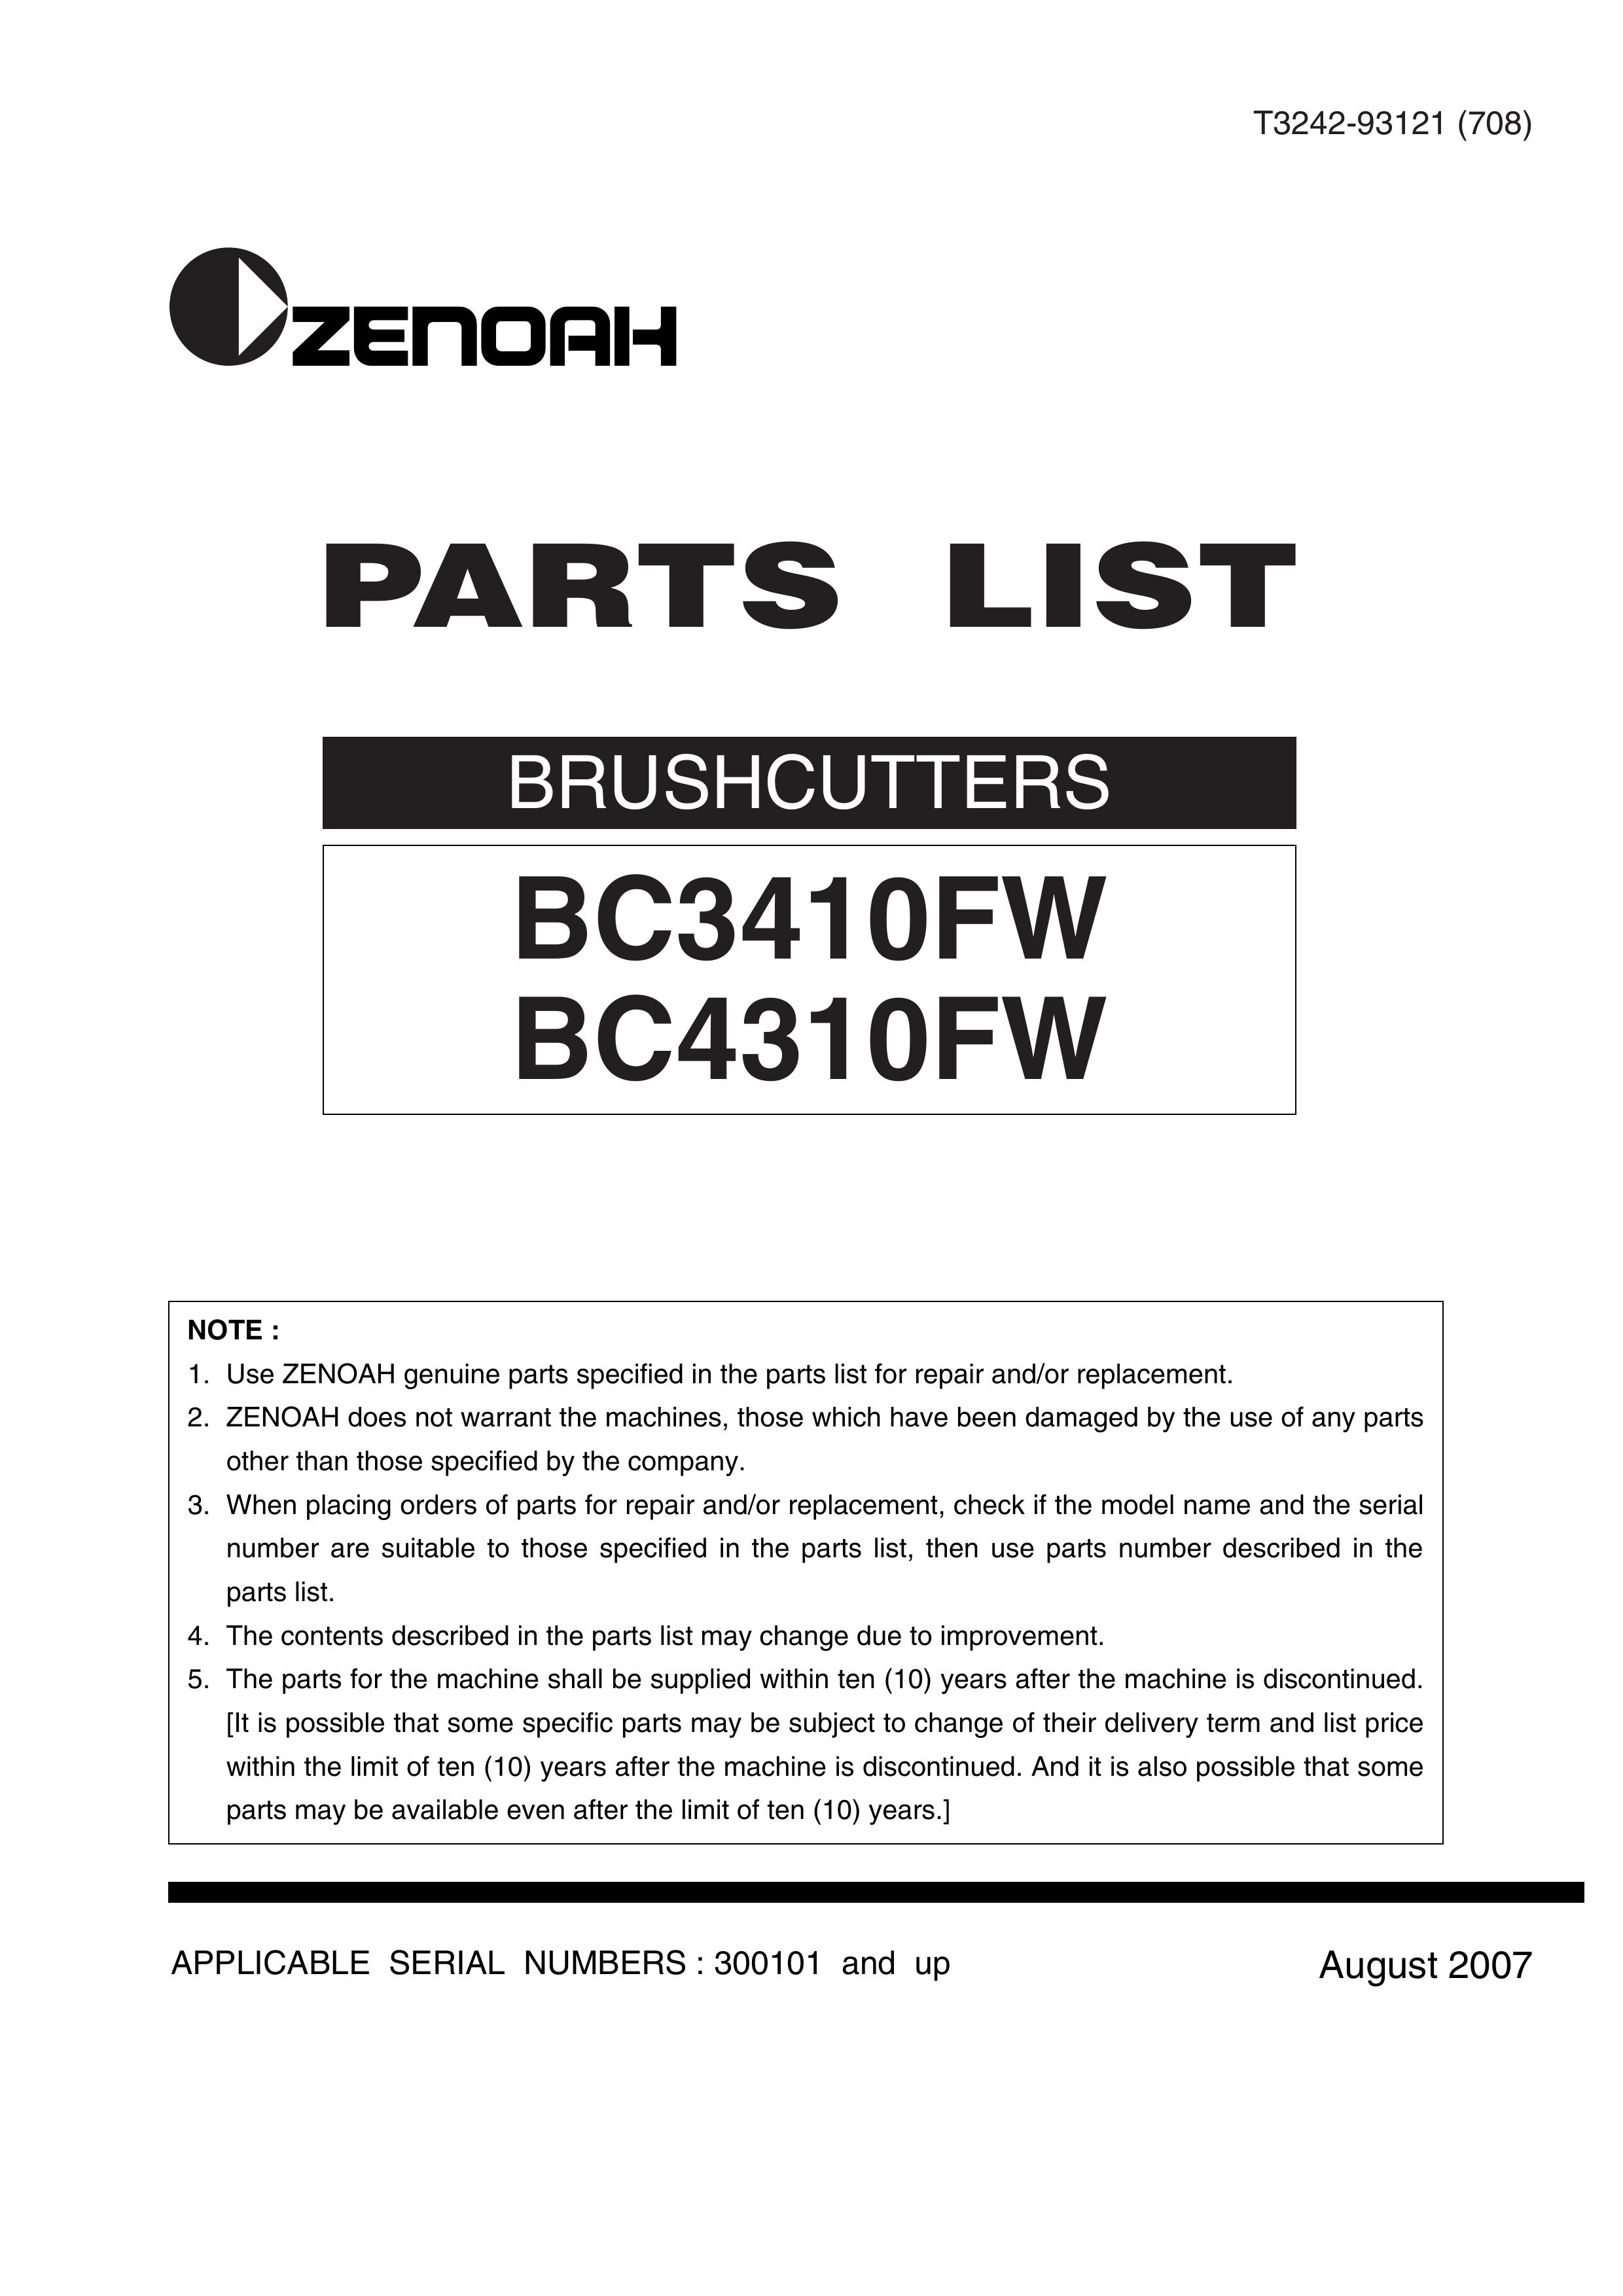 Zenoah BC3410FW Brush Cutter User Manual